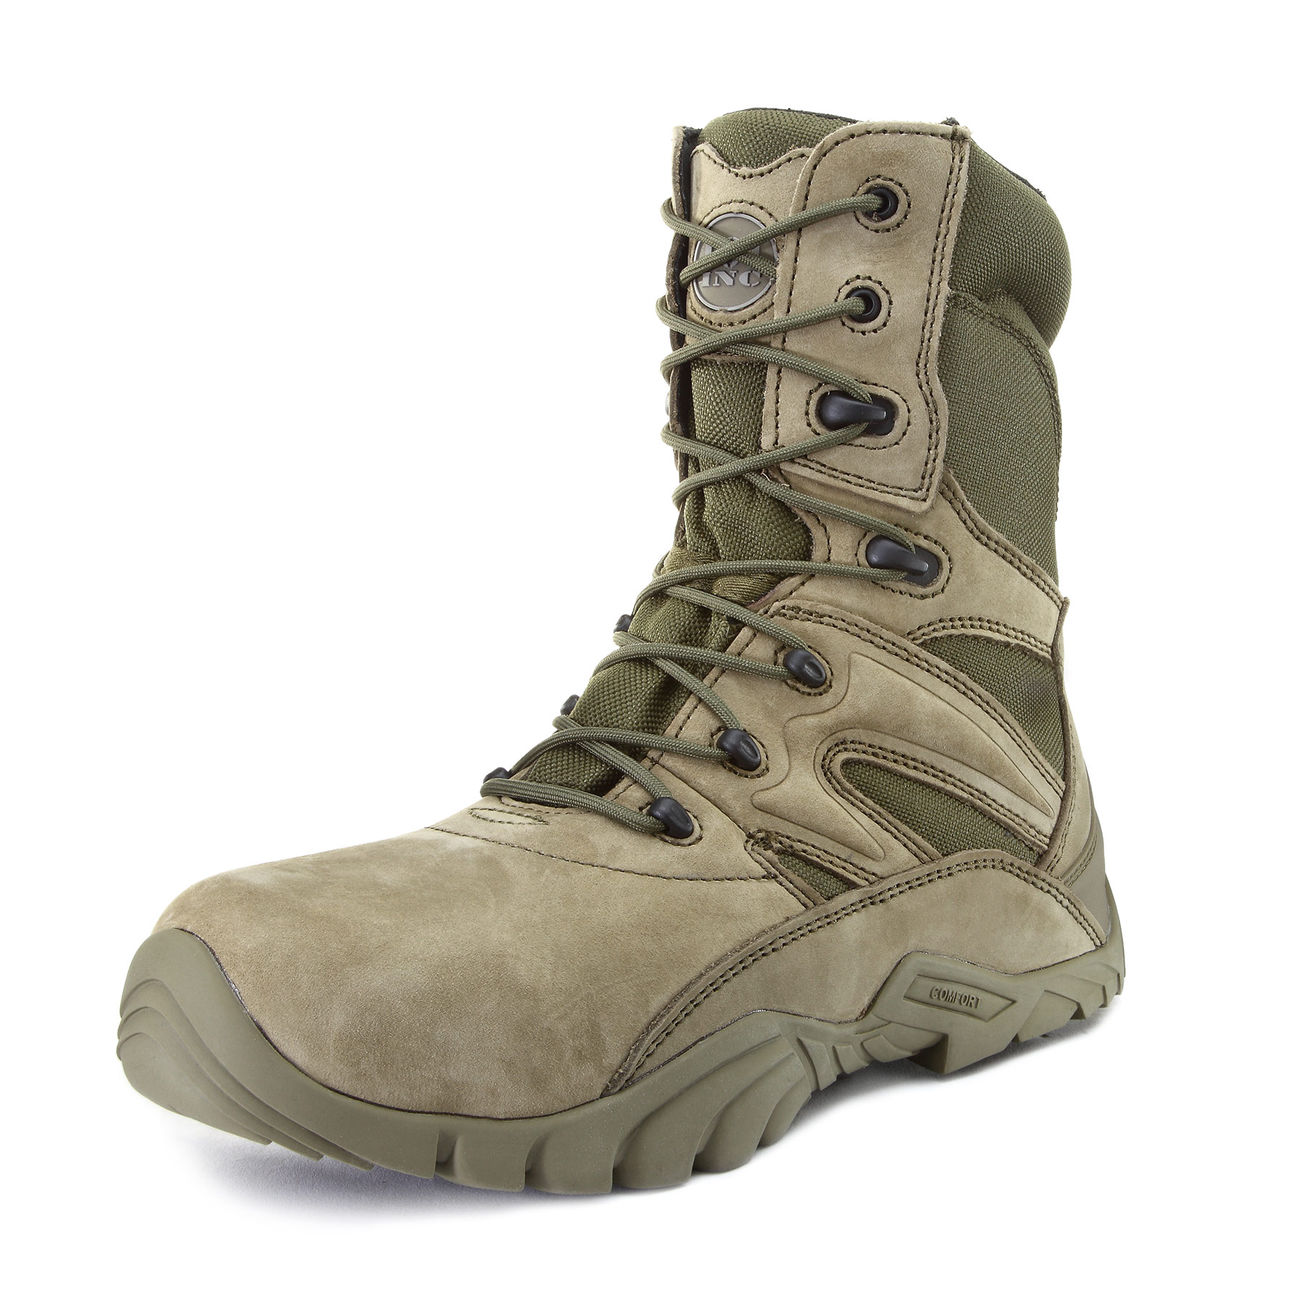 101 INC. Stiefel Tactical Boots Recon grün Bild 6